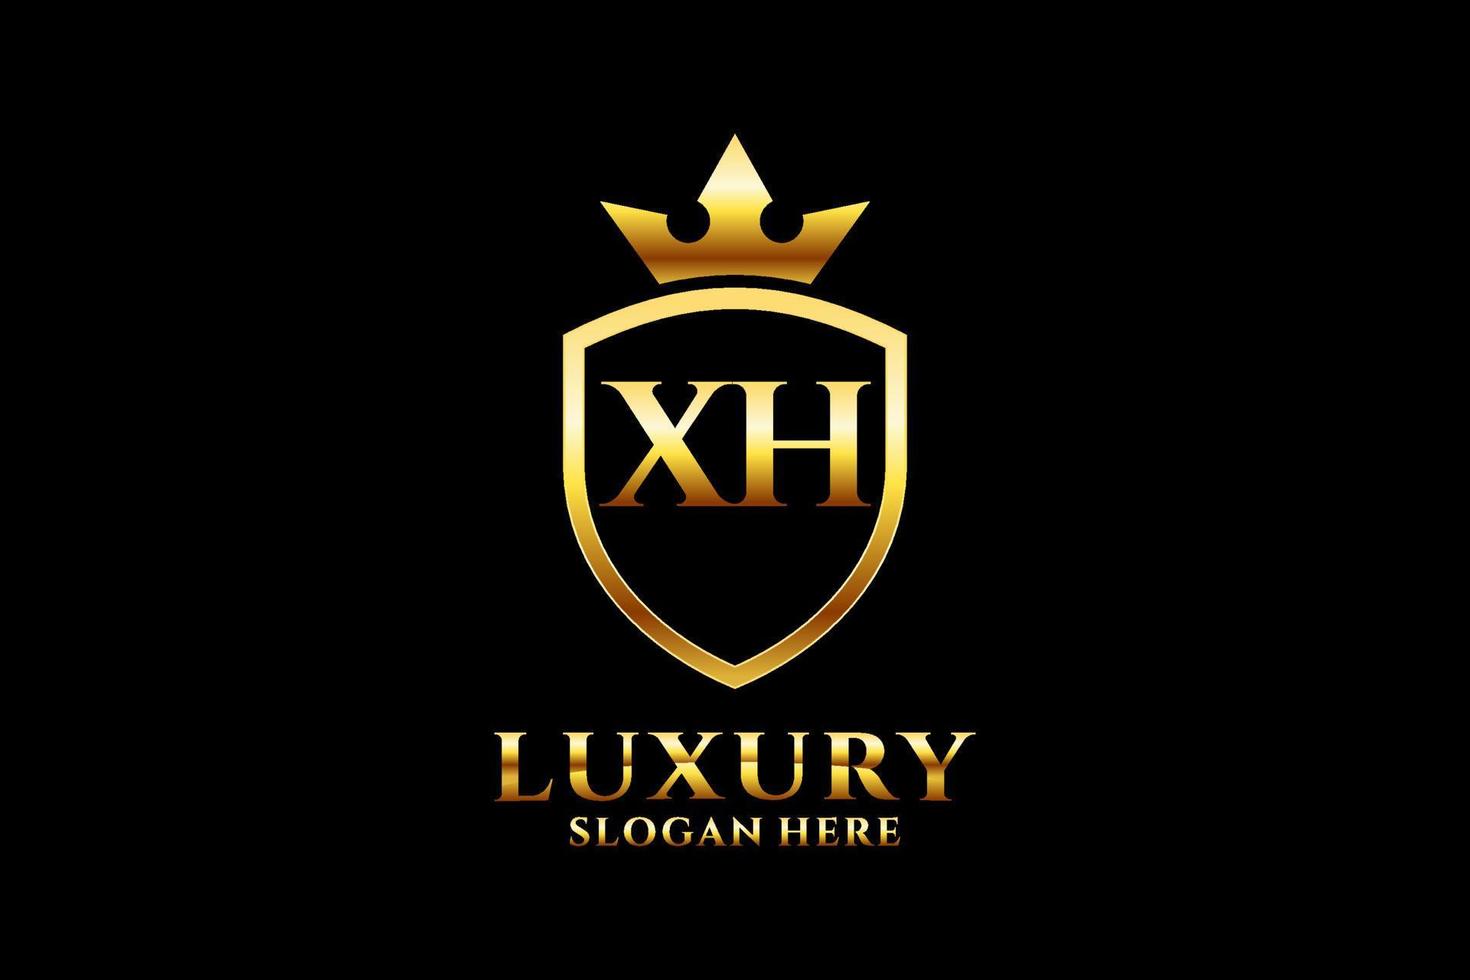 logotipo de monograma de lujo inicial xh elegante o plantilla de placa con pergaminos y corona real - perfecto para proyectos de marca de lujo vector